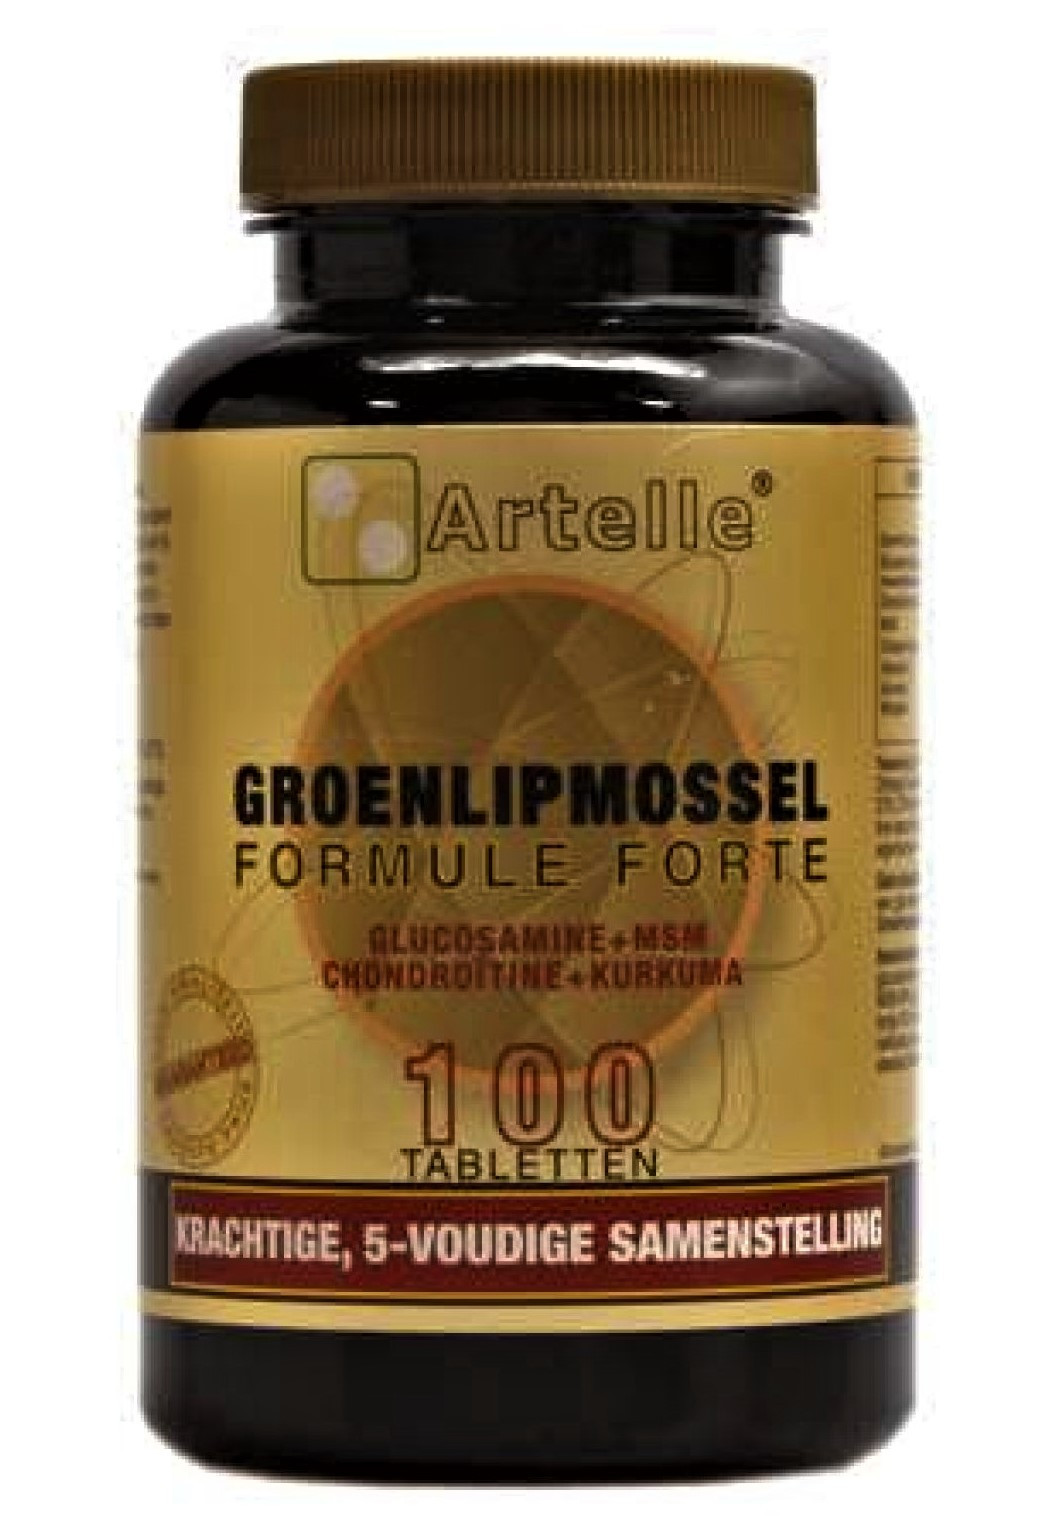 artelle-groenlipmossel-formule-forte-tabletten-1-2048x2048-3419995418